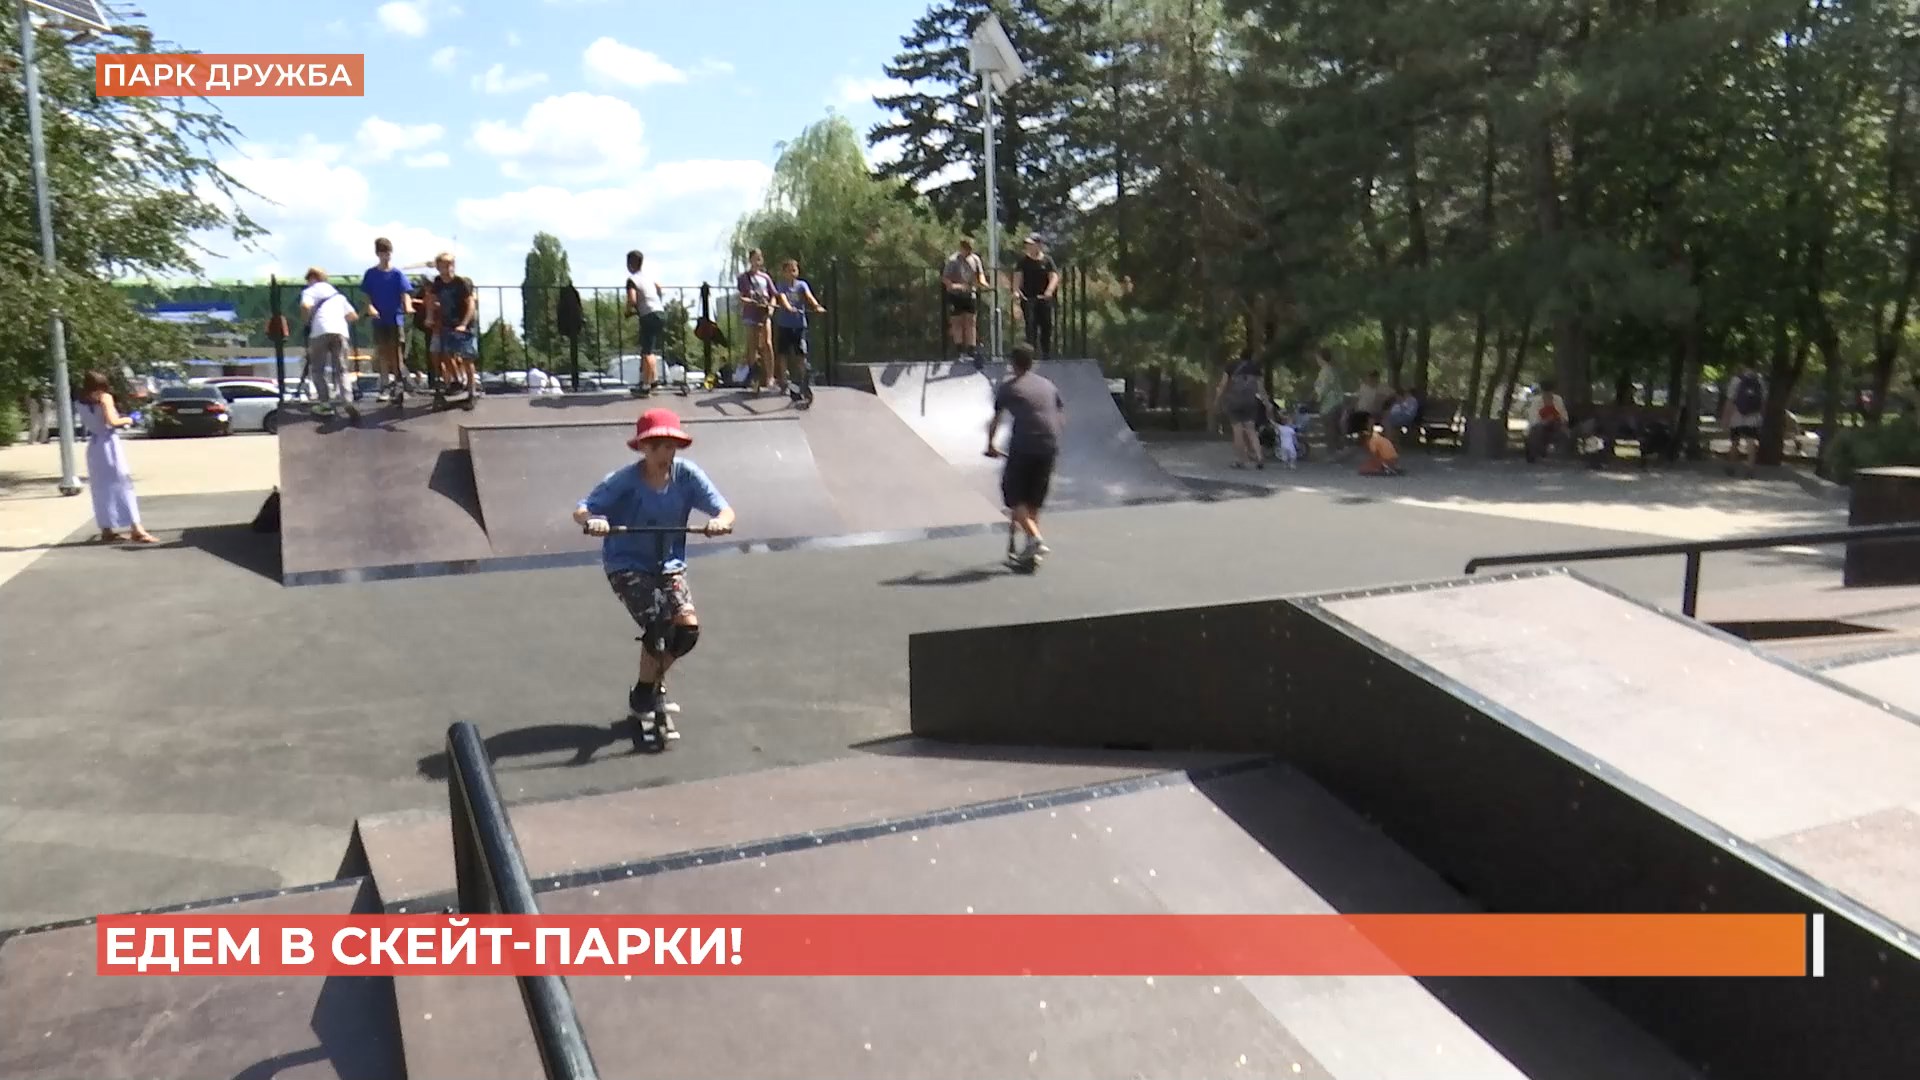 Два оборудованных скейт-парка открыты в ростовских парках Собино и Дружба